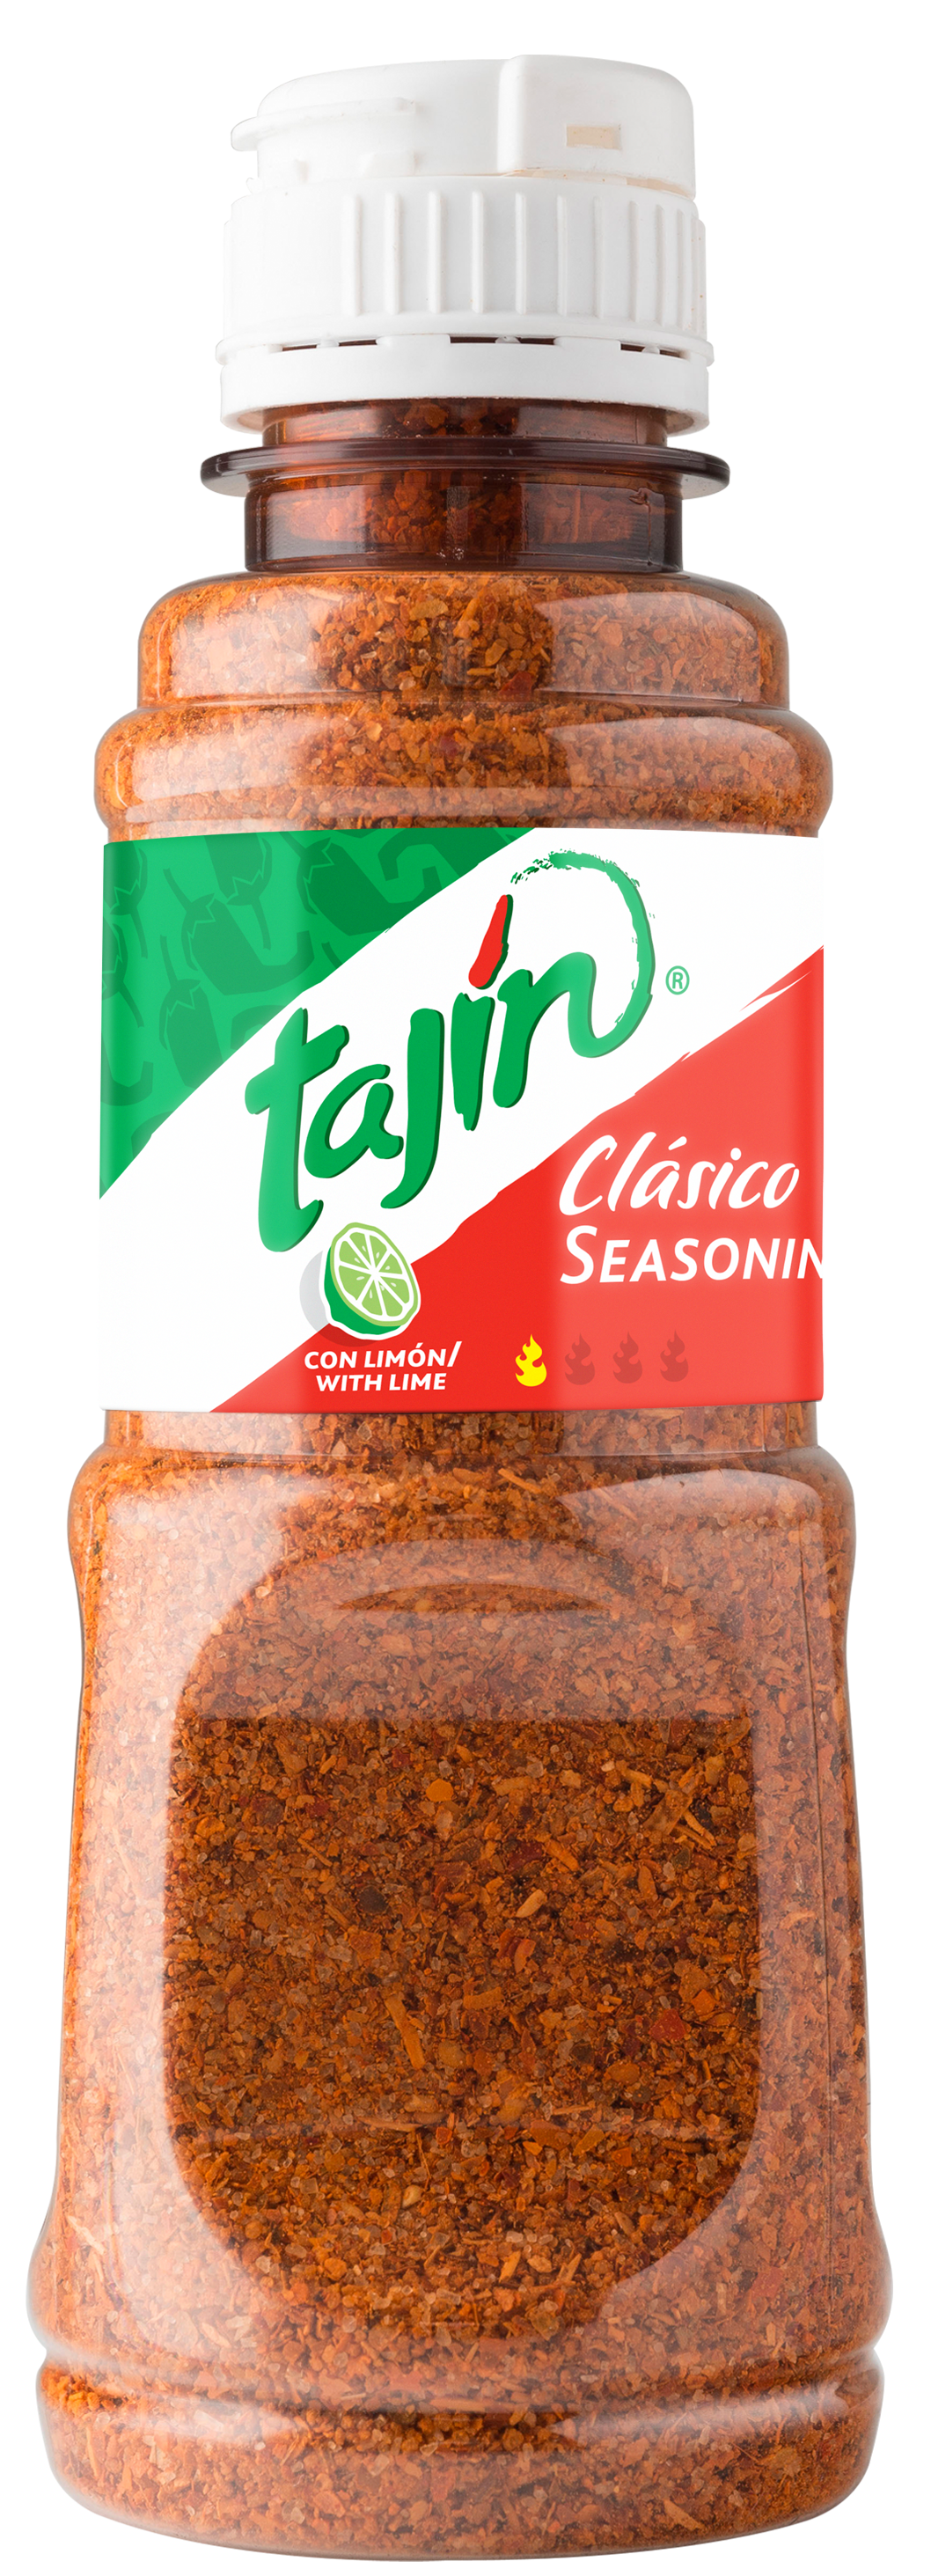 Tají_n Clíçsico Seasoning, 5oz